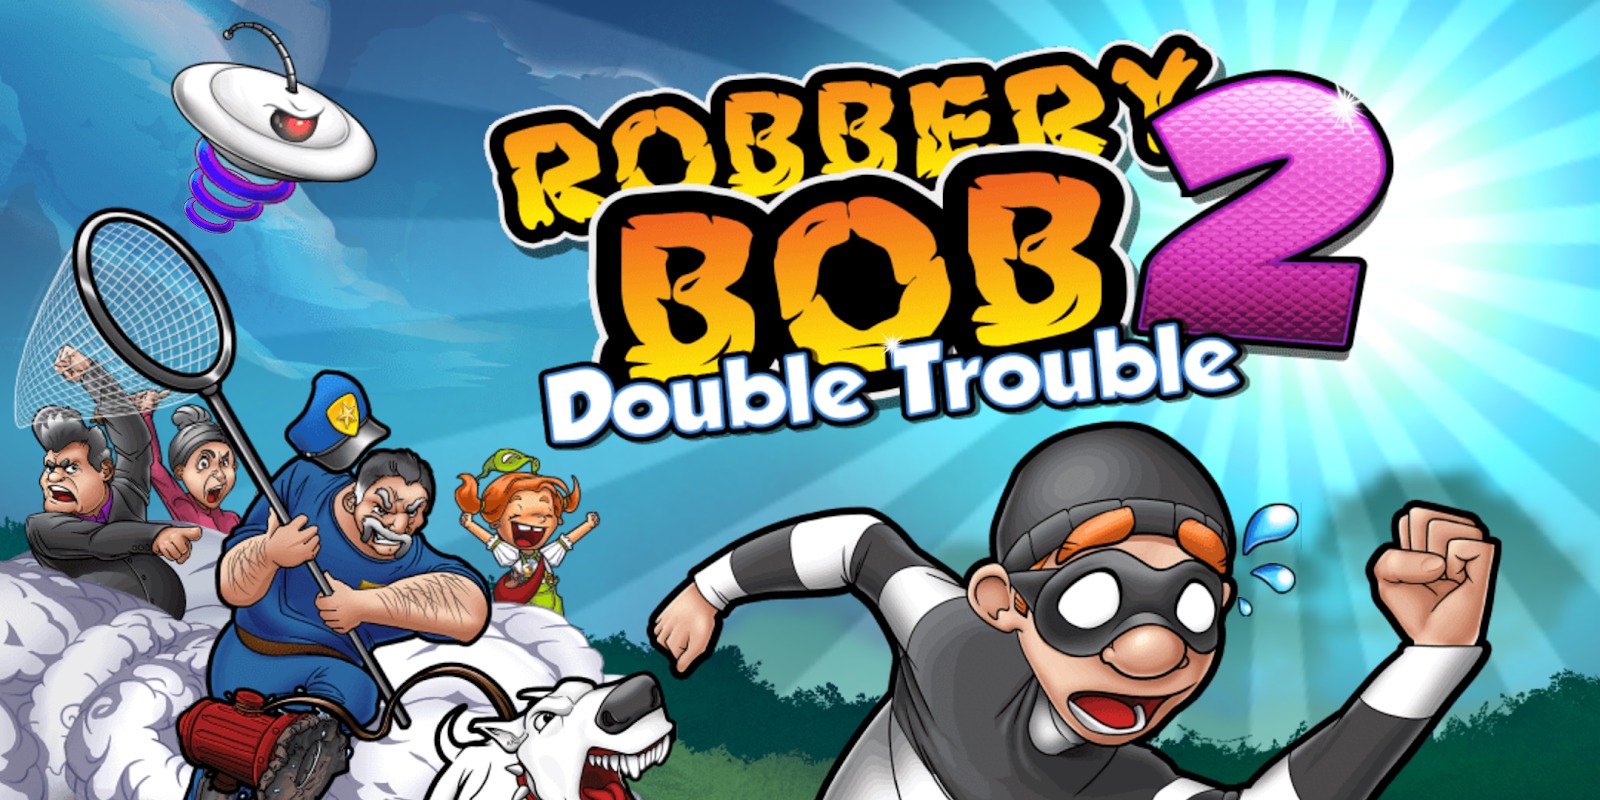 robbery bob 2